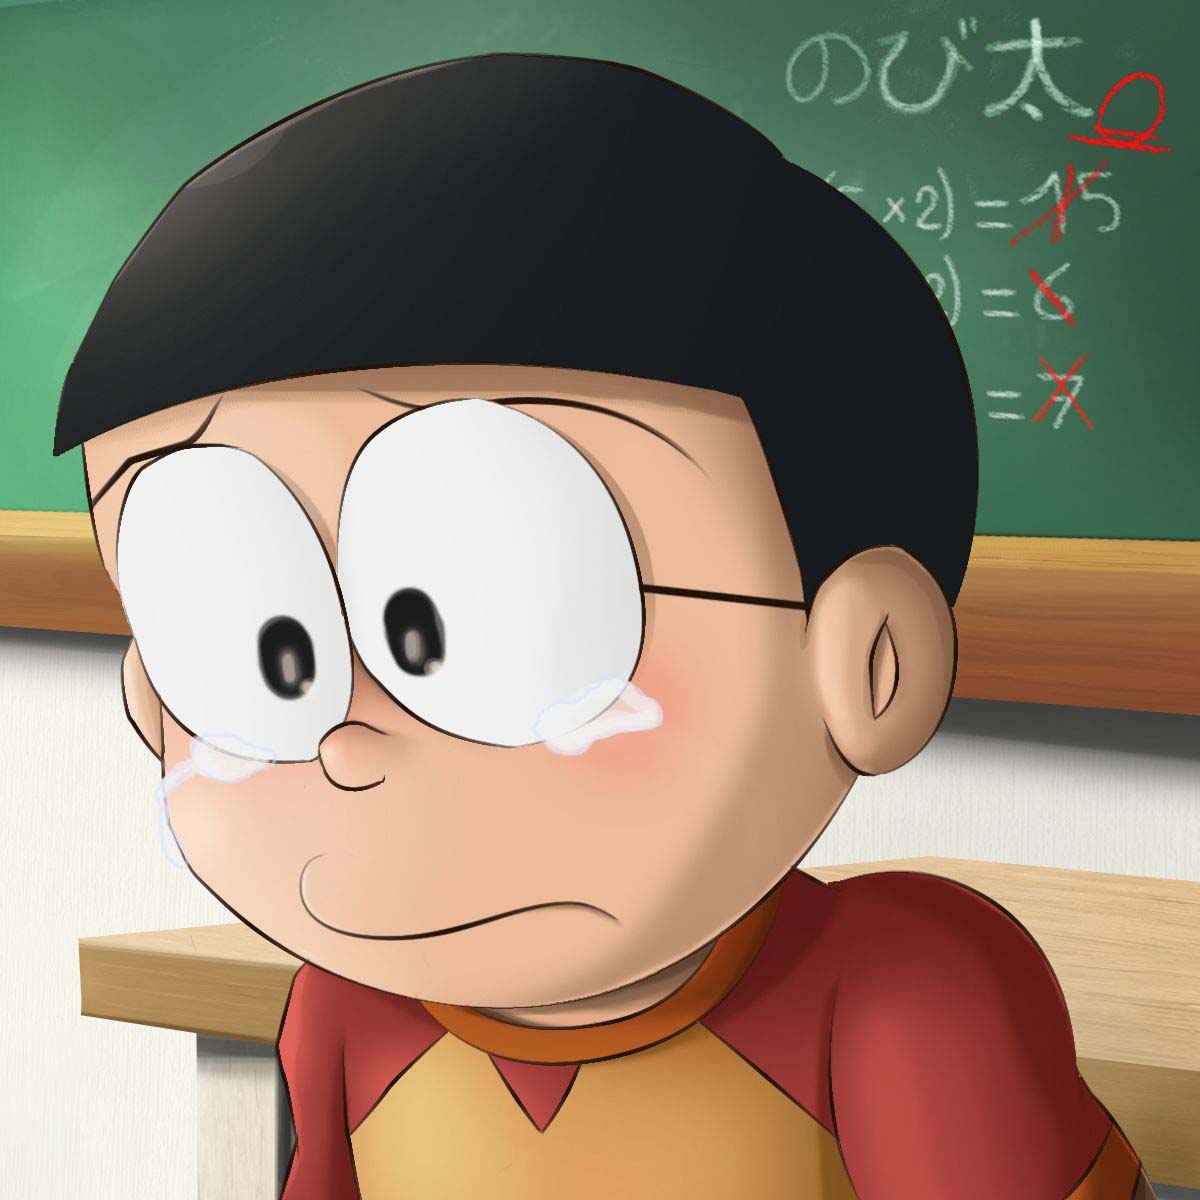 Chia sẻ nhiều hơn 99 hình nền nobita cool ngầu tuyệt vời nhất   thdonghoadian